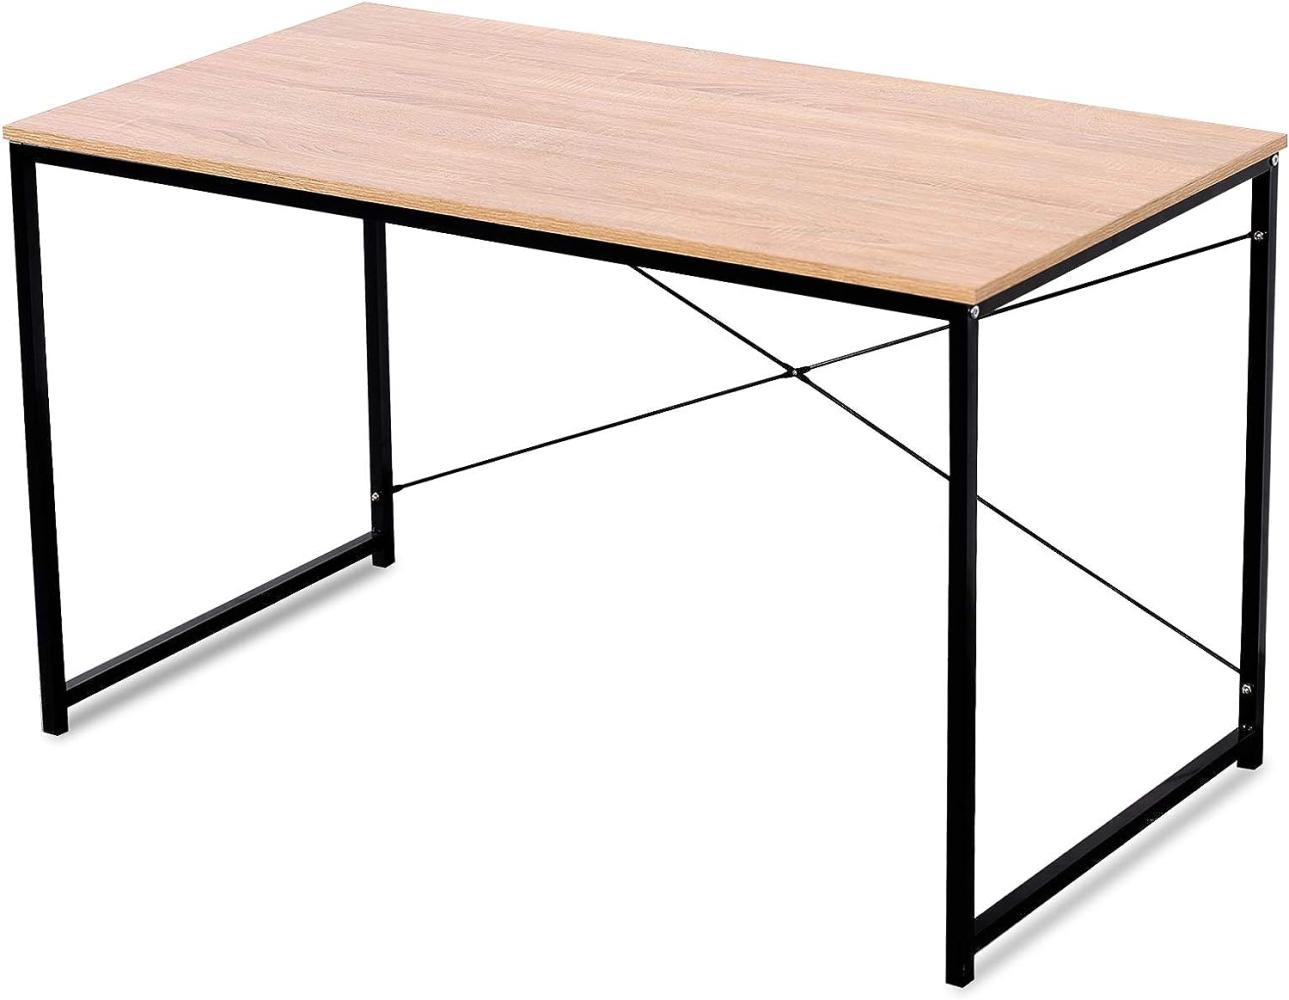 Schreibtisch, Holz/ Stahl schwarz-rostfarben, 120 x 60 x 70 cm Bild 1